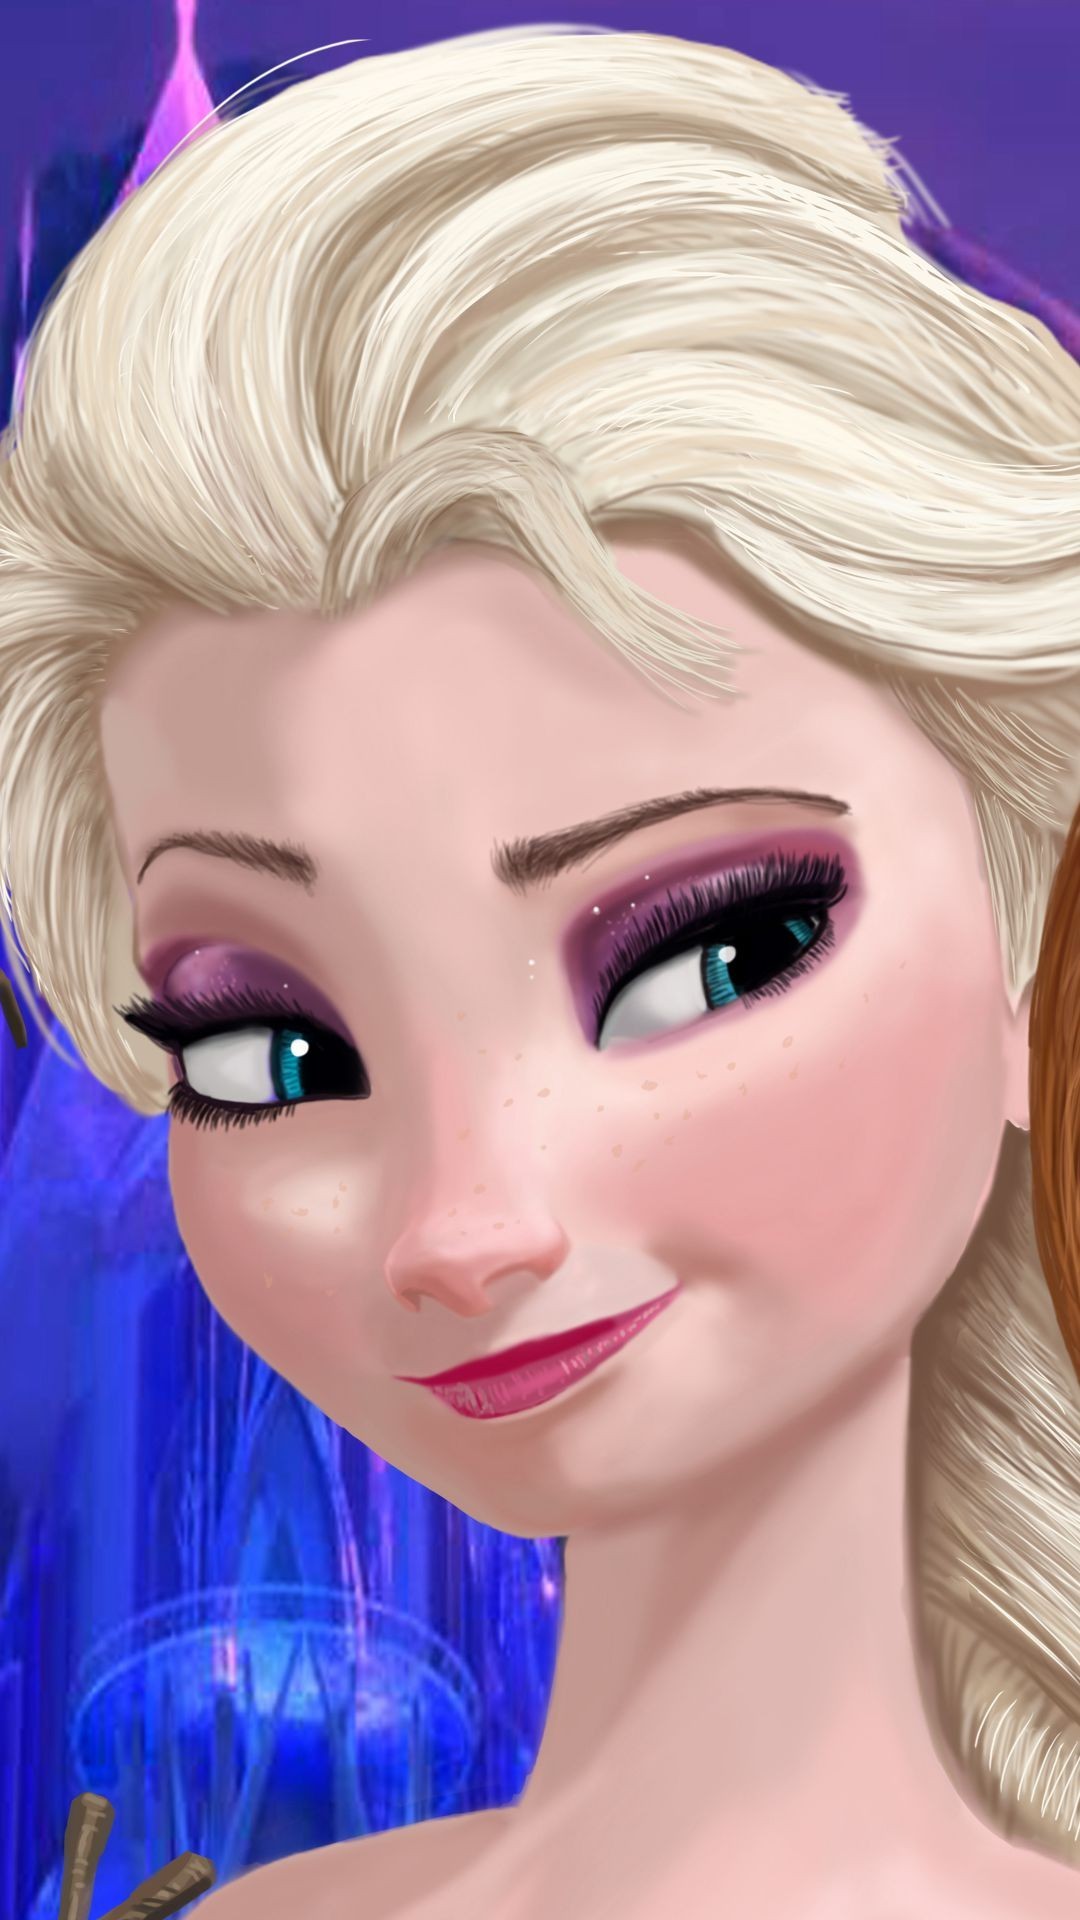 1080x1920 Elegant Smile Princess Elsa Halloween Frozen iPhone 6 Plus Wallpaper - 2014  Disney Trendy Frozen Makeup